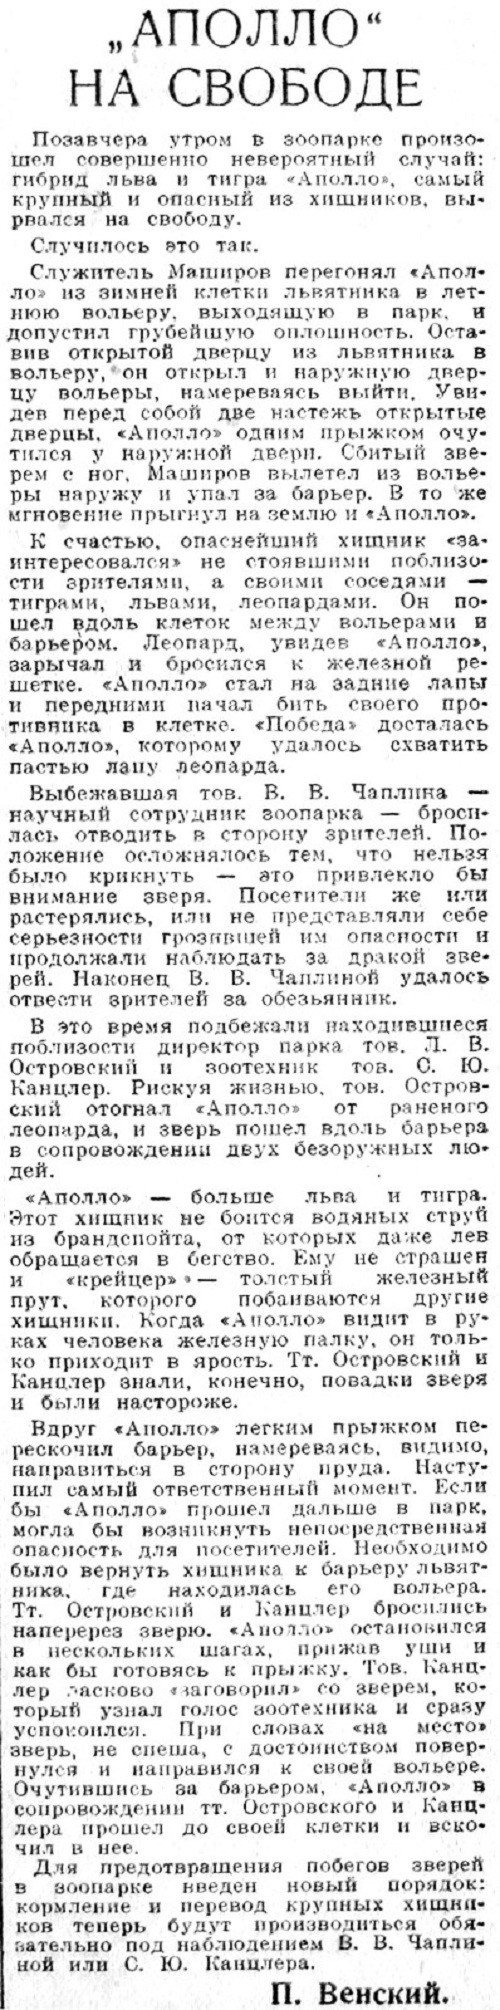 «Вечерняя Москва», 26 сентября 1938 г.